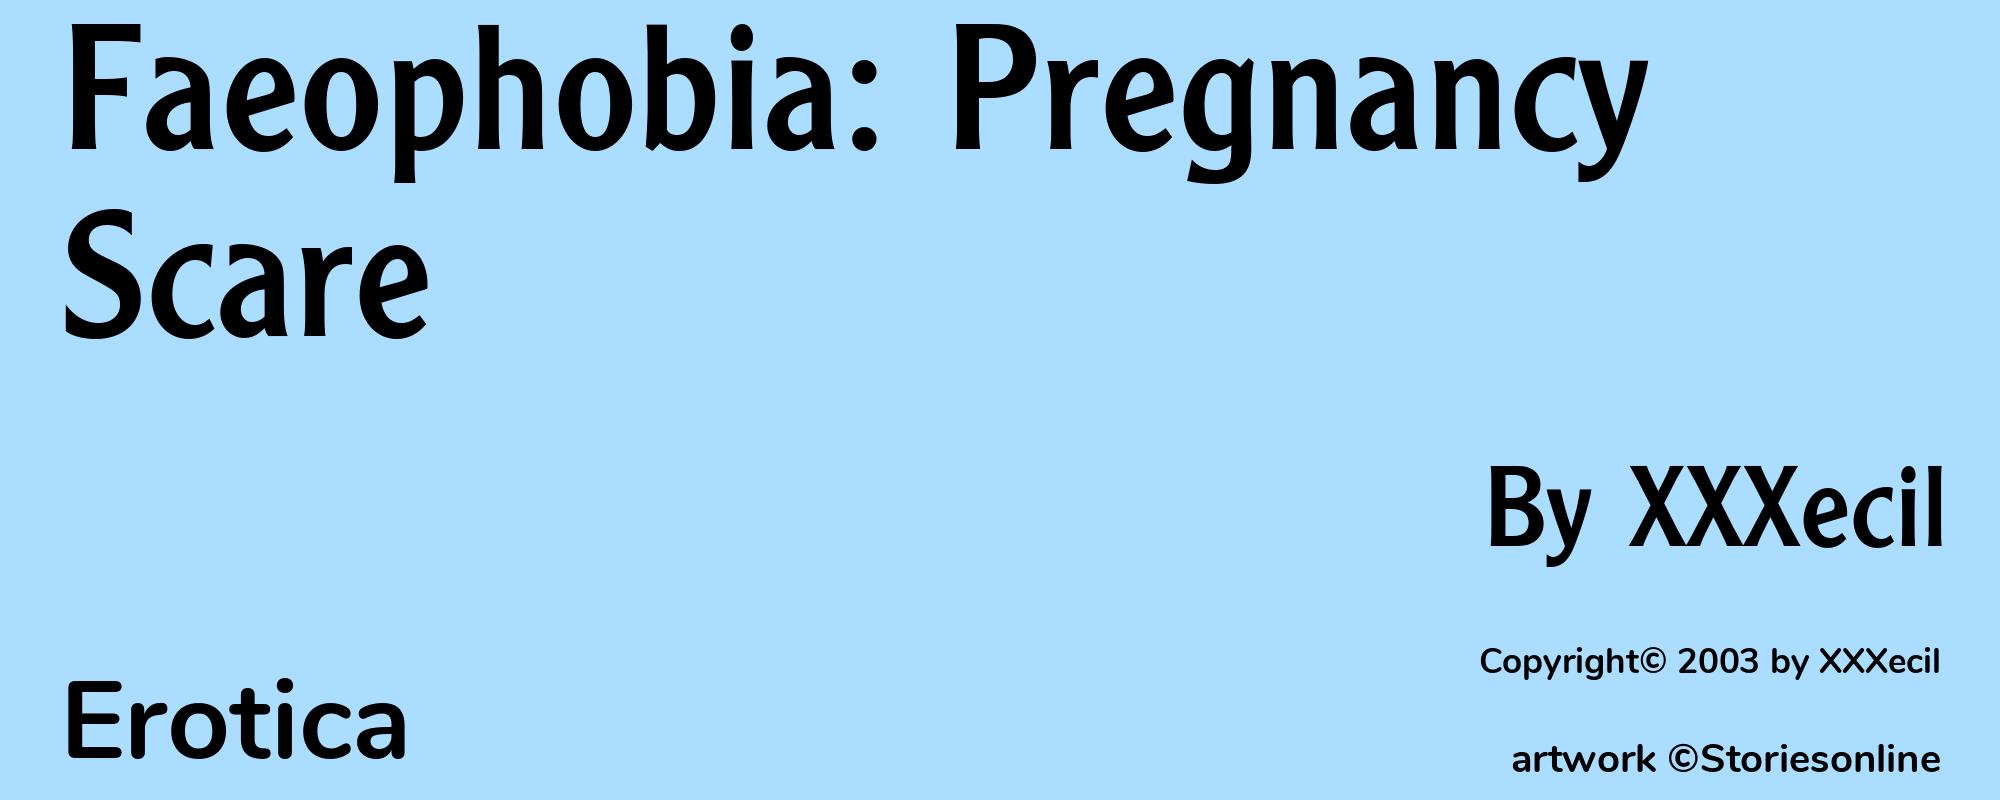 Faeophobia: Pregnancy Scare - Cover